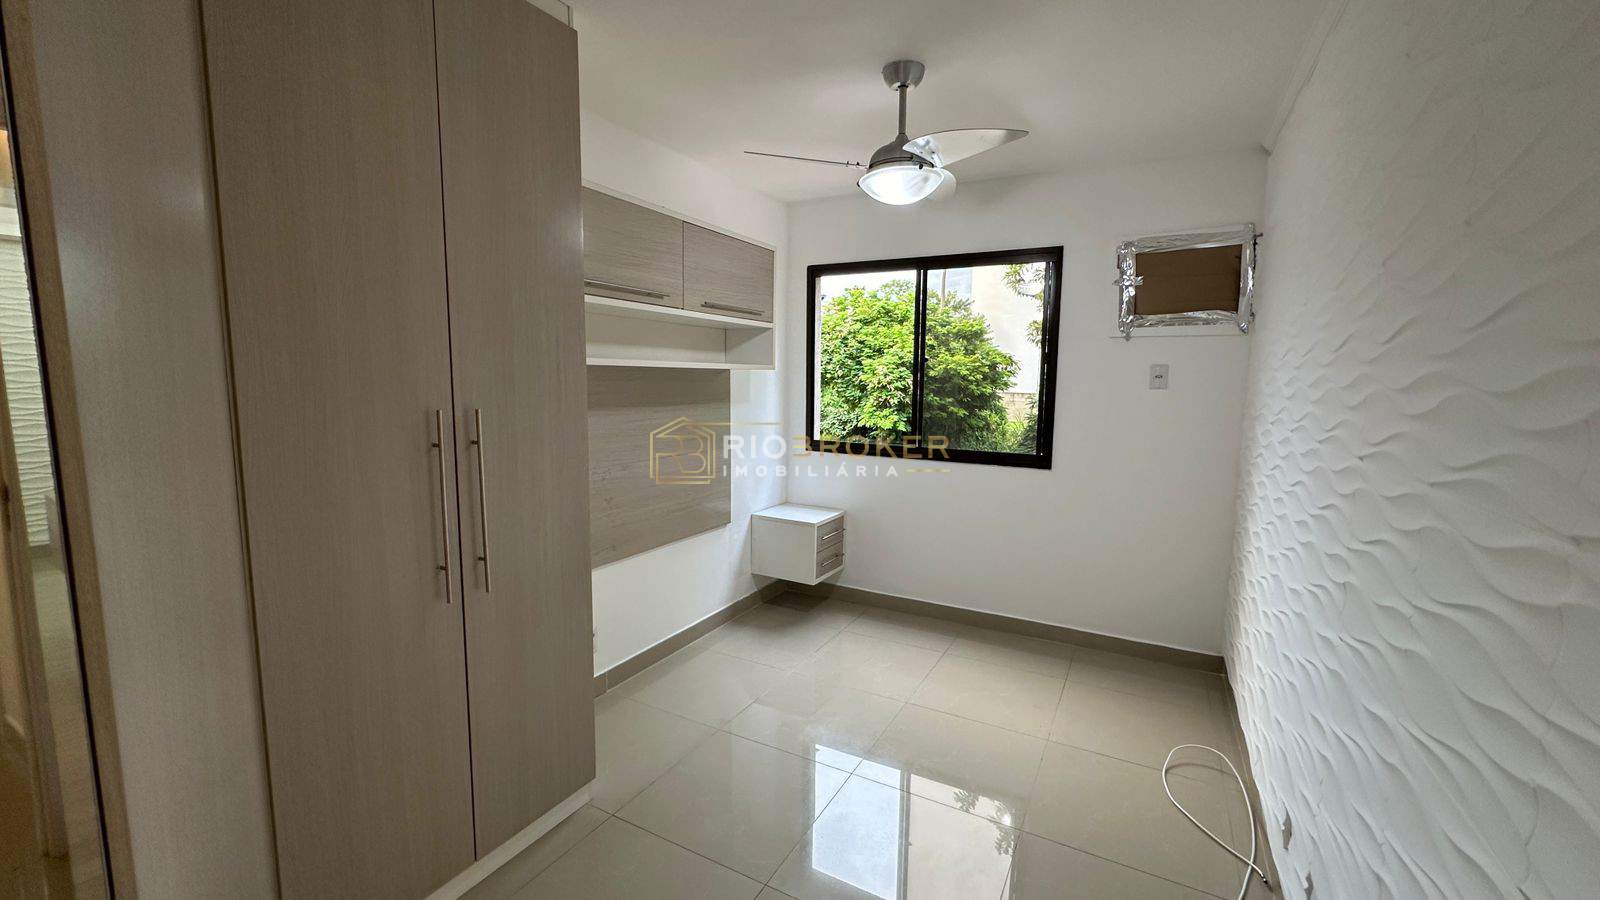 Apartamento de 2 quartos à venda - CAMPO GRANDE - Condomínio Life Resort